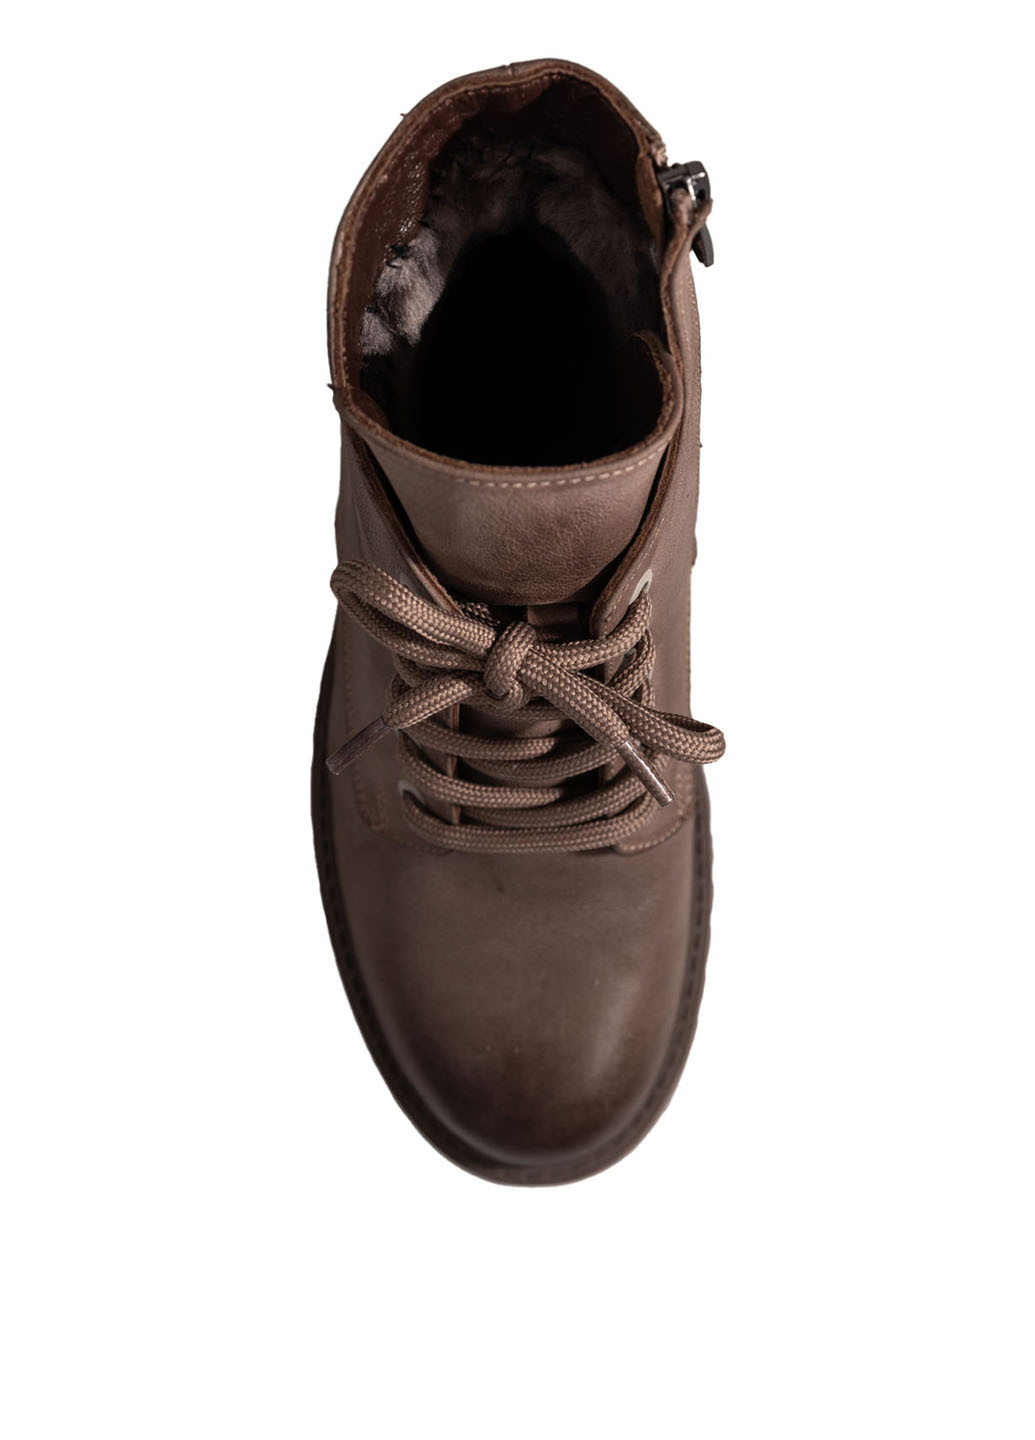 Зимние ботинки Estomod со шнуровкой, с цепочками